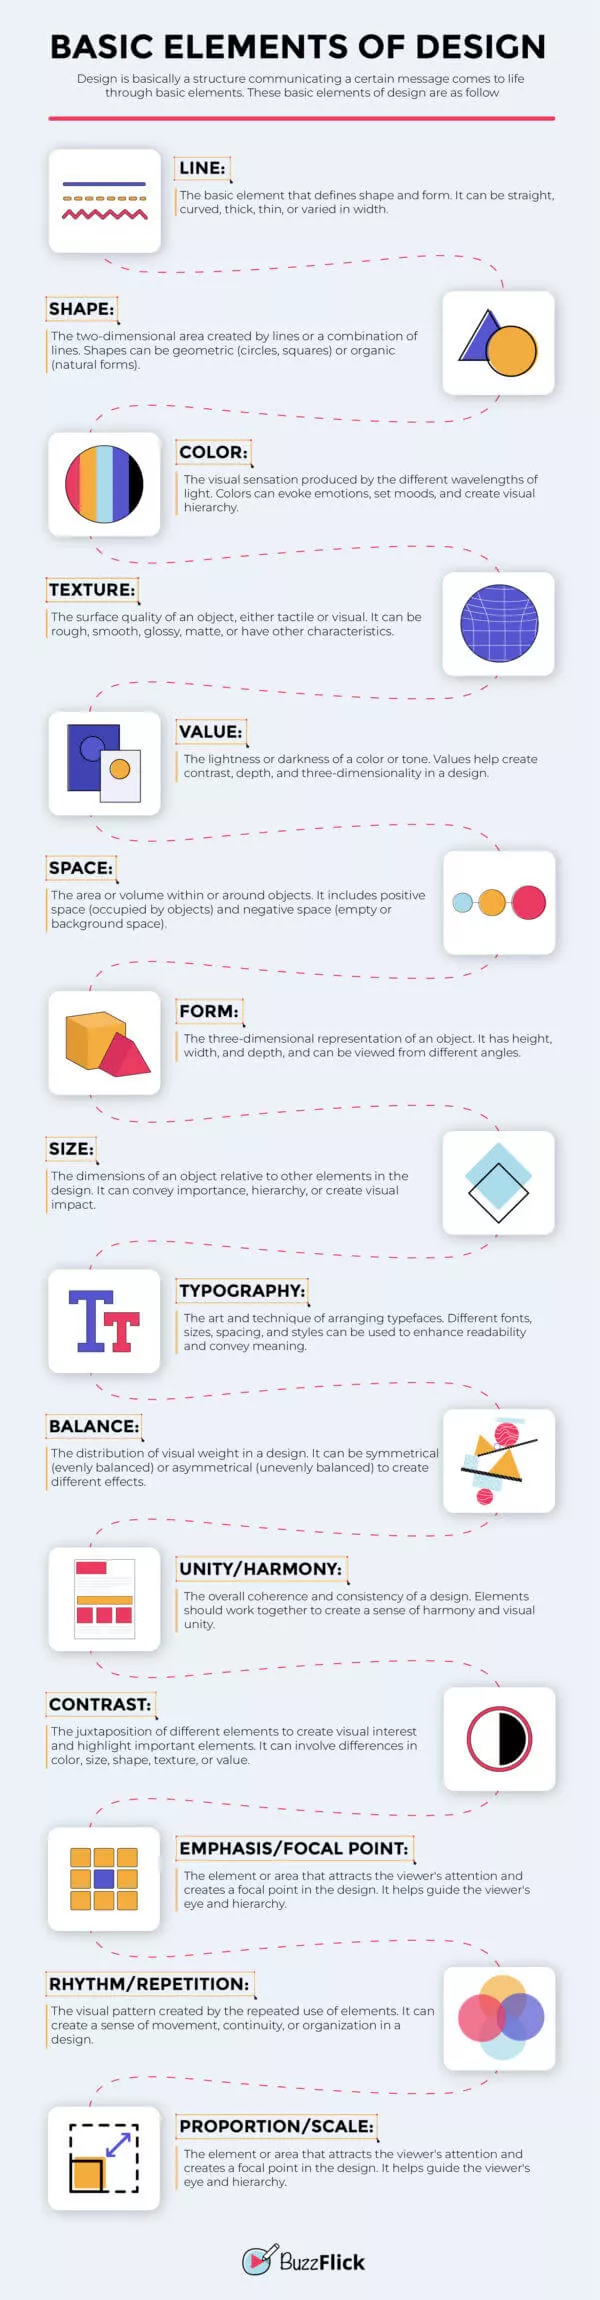 basic elements of design image 6